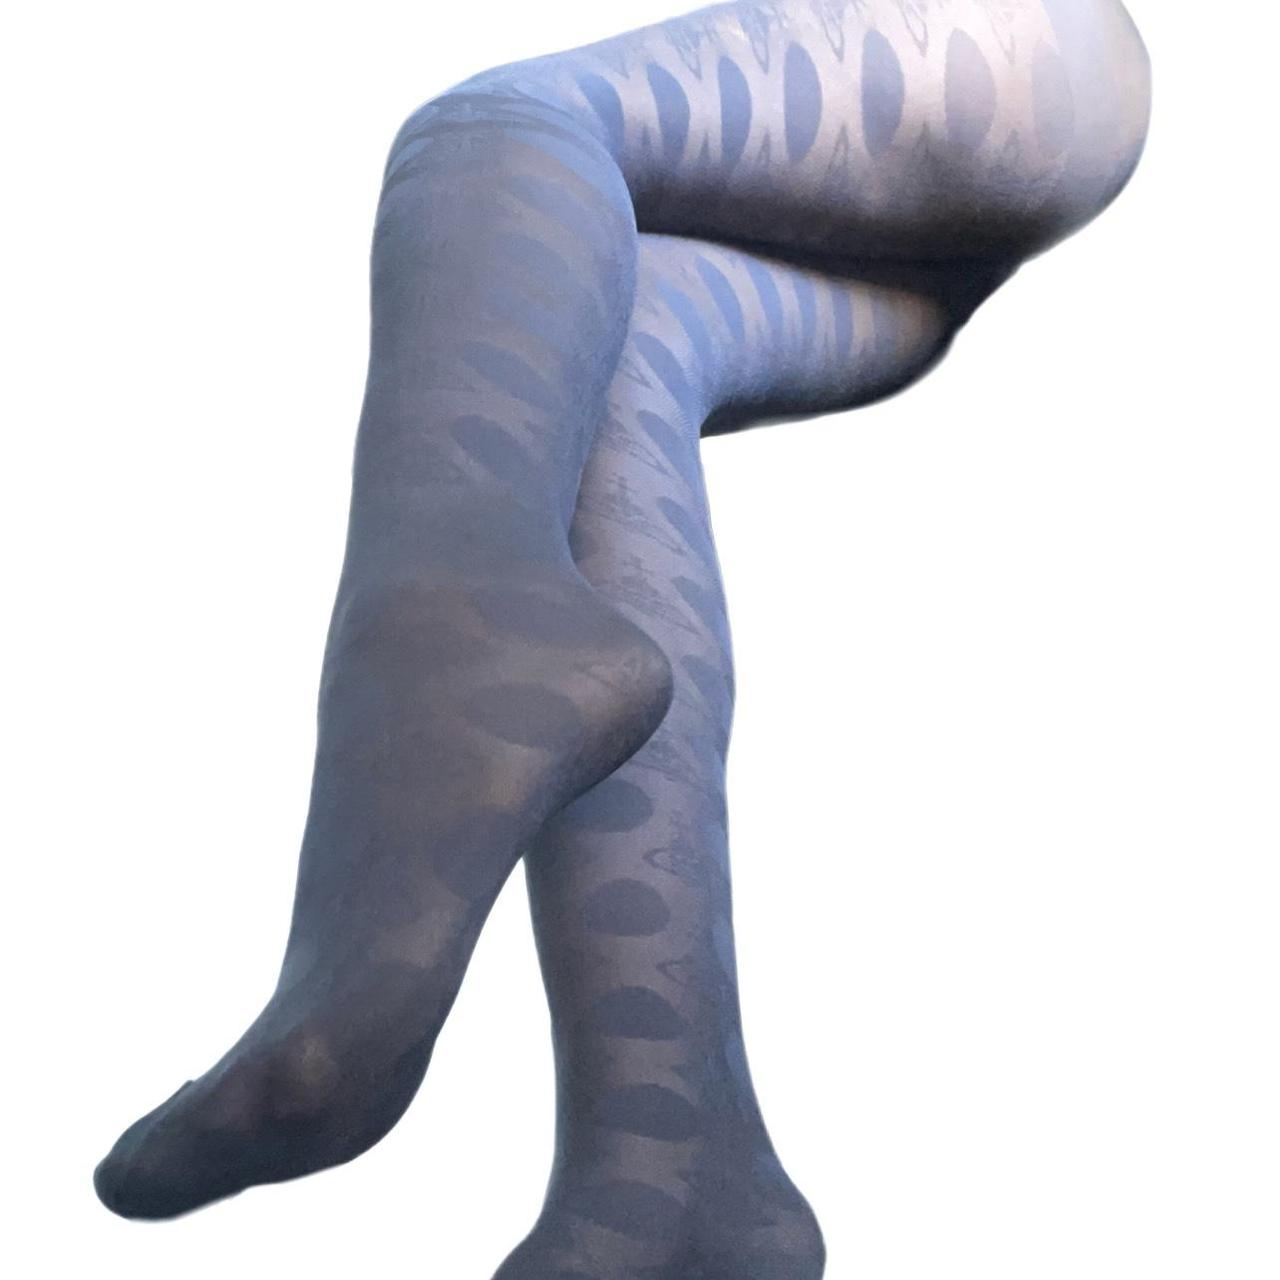 greyish blue vivienne westwood stockings with orb... - Depop